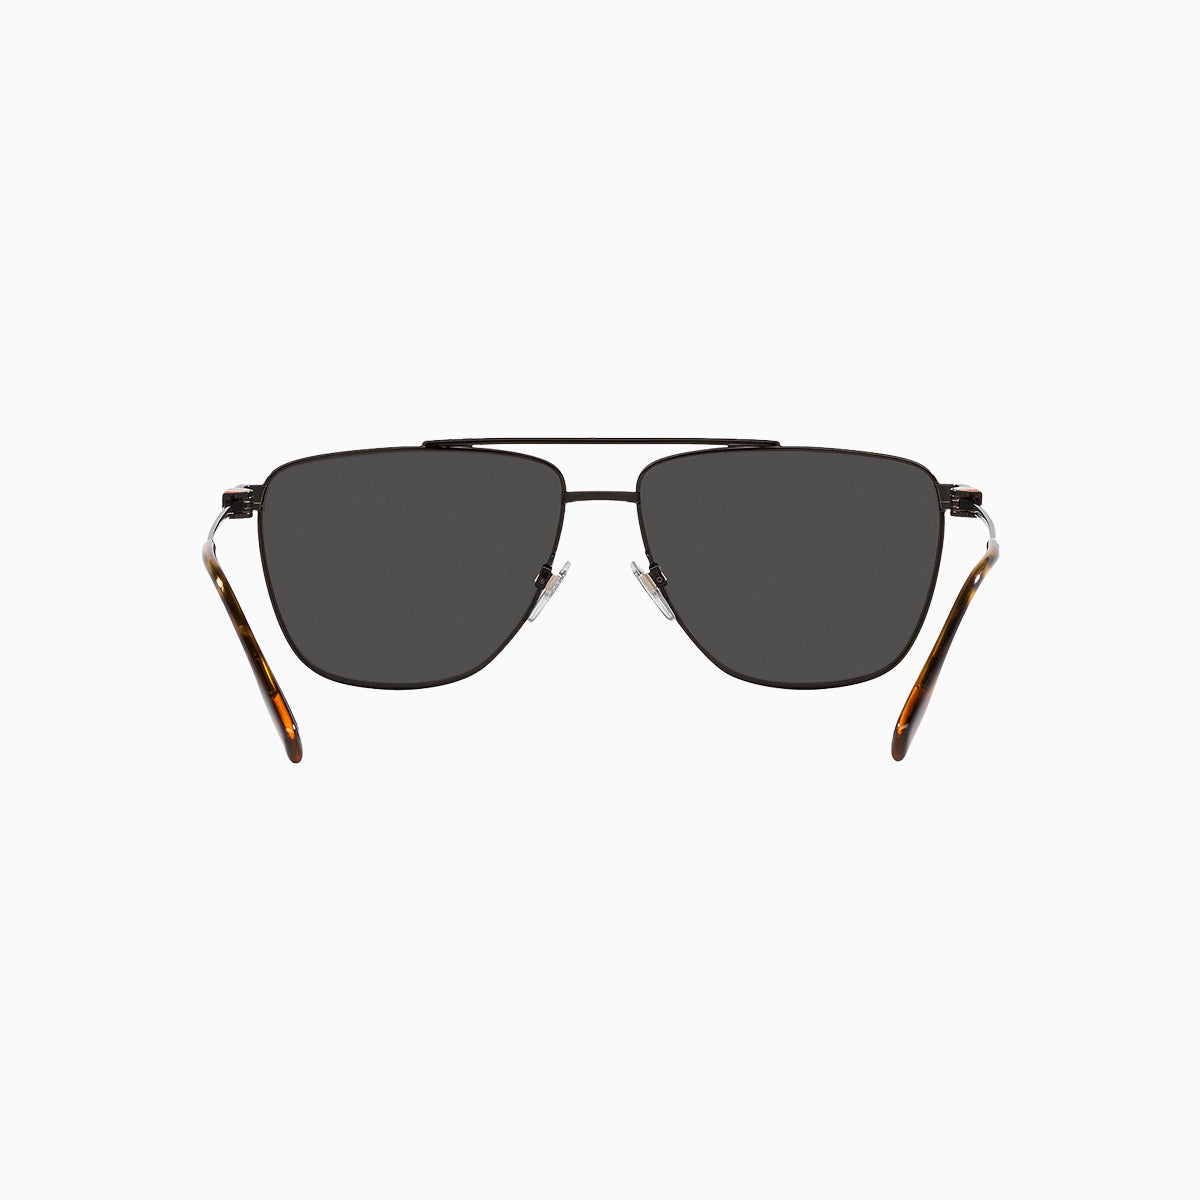 mens-burberry-blaine-sunglasses-0be3141-100187